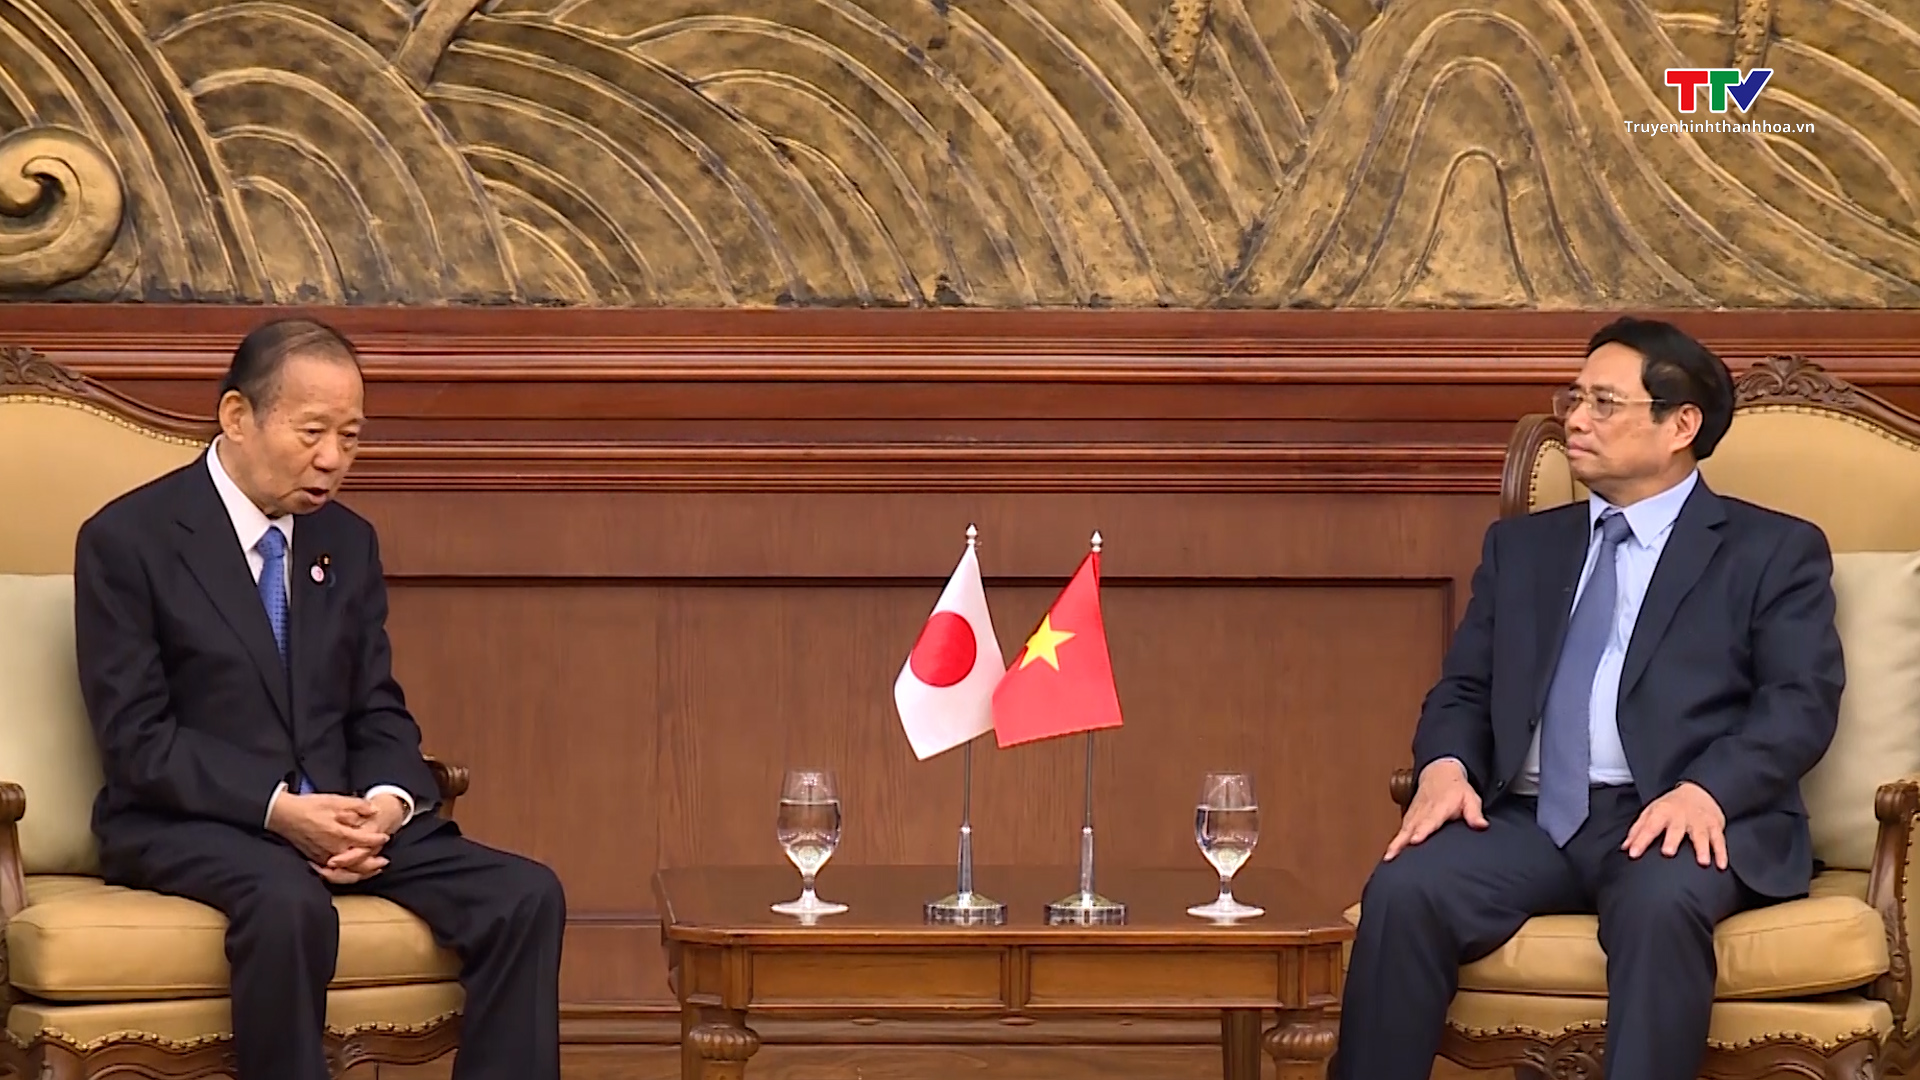 Thủ tướng Chính phủ Phạm Minh Chính gặp gỡ Chủ tịch liên minh Nghị sỹ hữu nghị Nhật Bản - Việt Nam tại Thanh Hoá  - Ảnh 4.